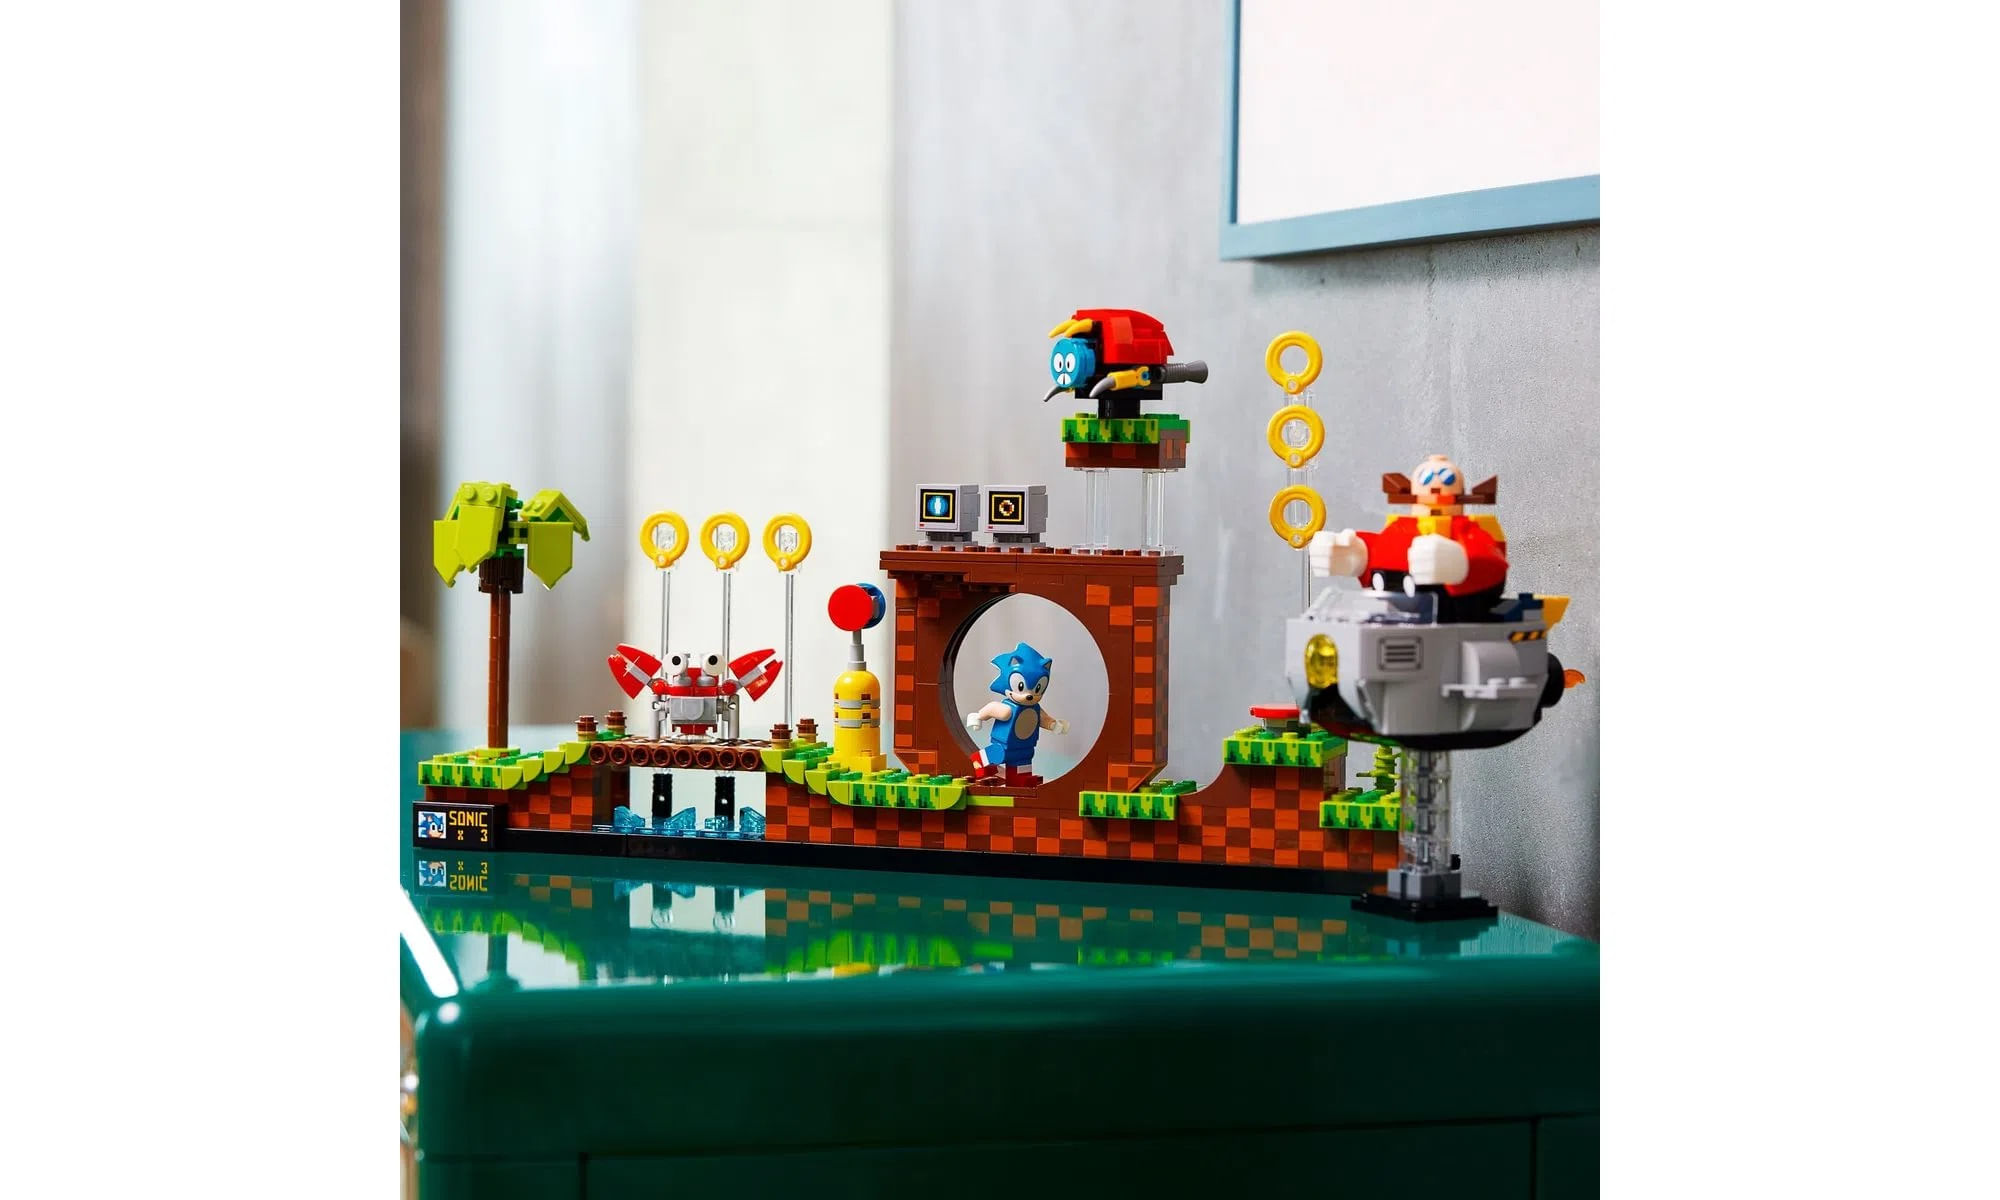 LEGO Ideas 21331 - Sonic The Hedgehog  Bonecas, Barrados de croche,  Bonecas de crochê